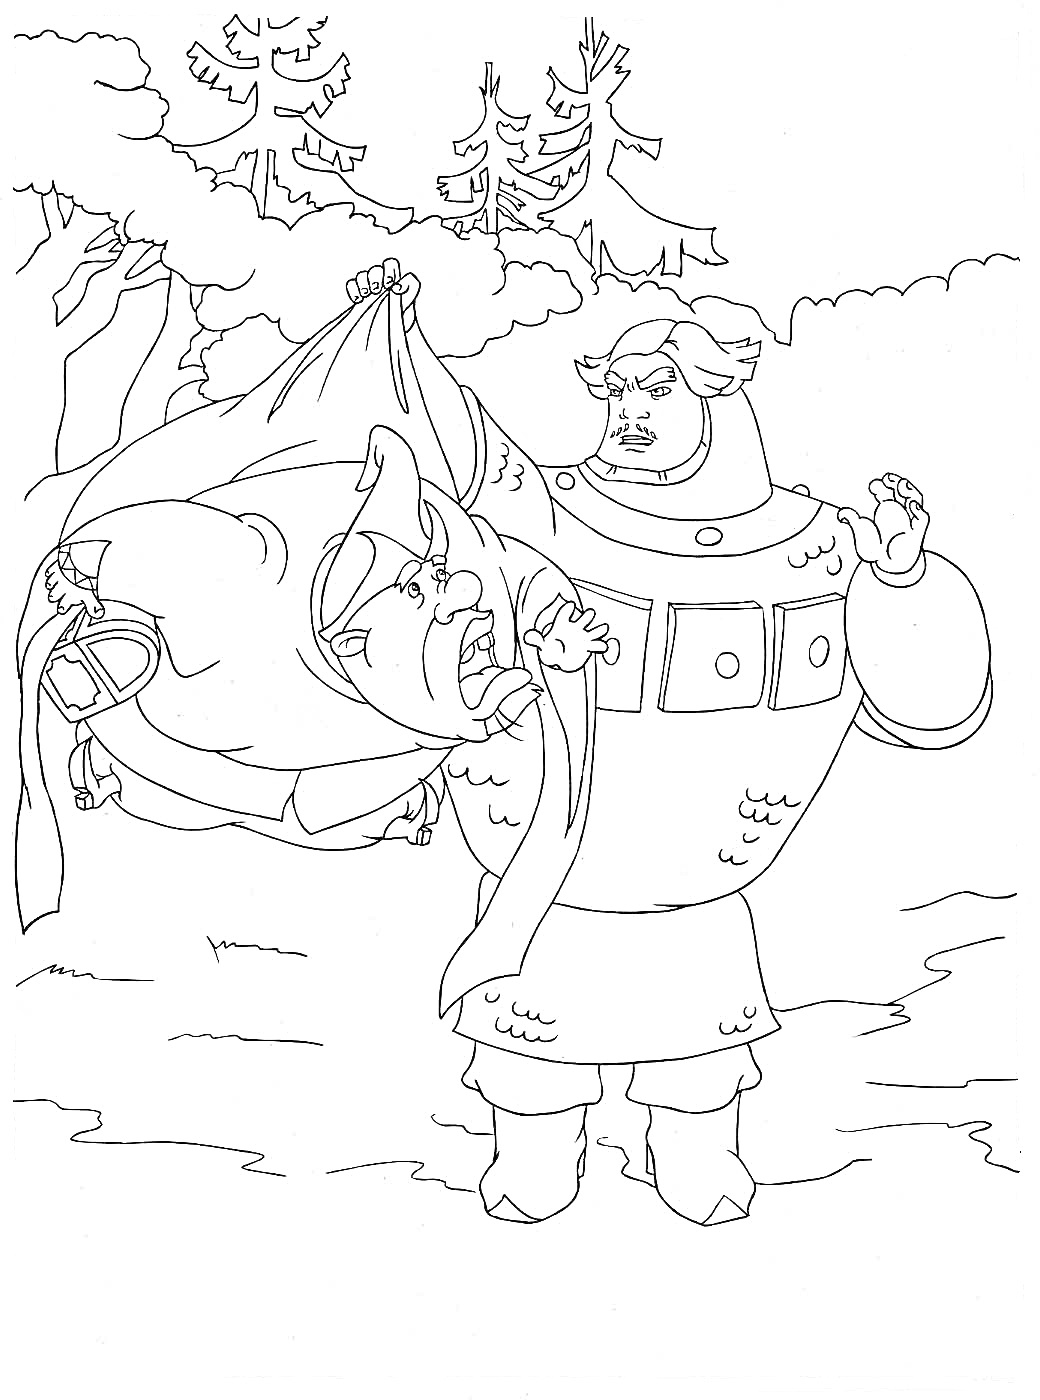 Богатырь держит на руках поверженного разбойника в лесу